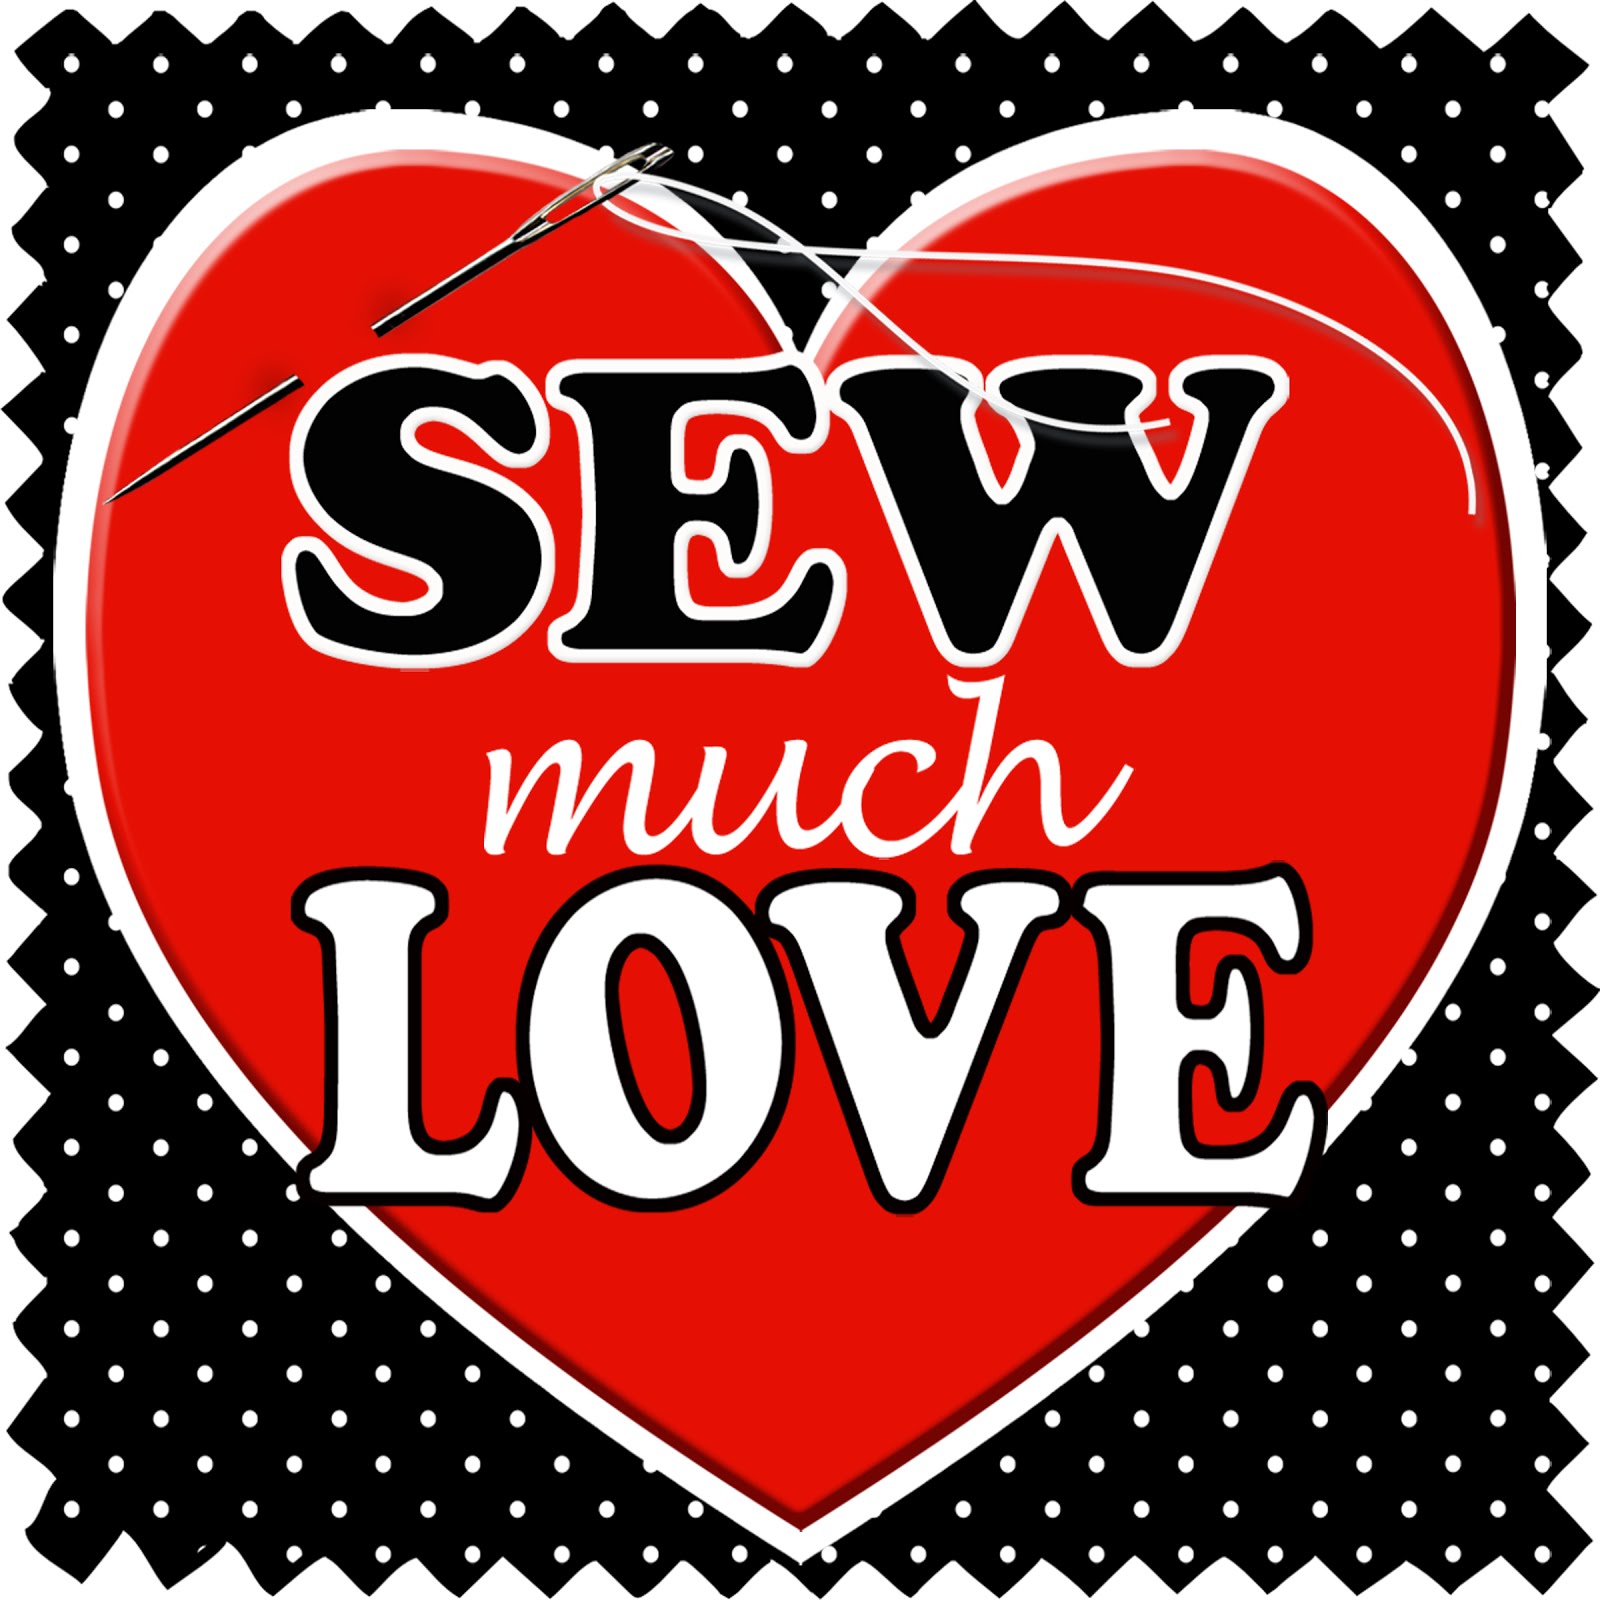 Sew Much Love